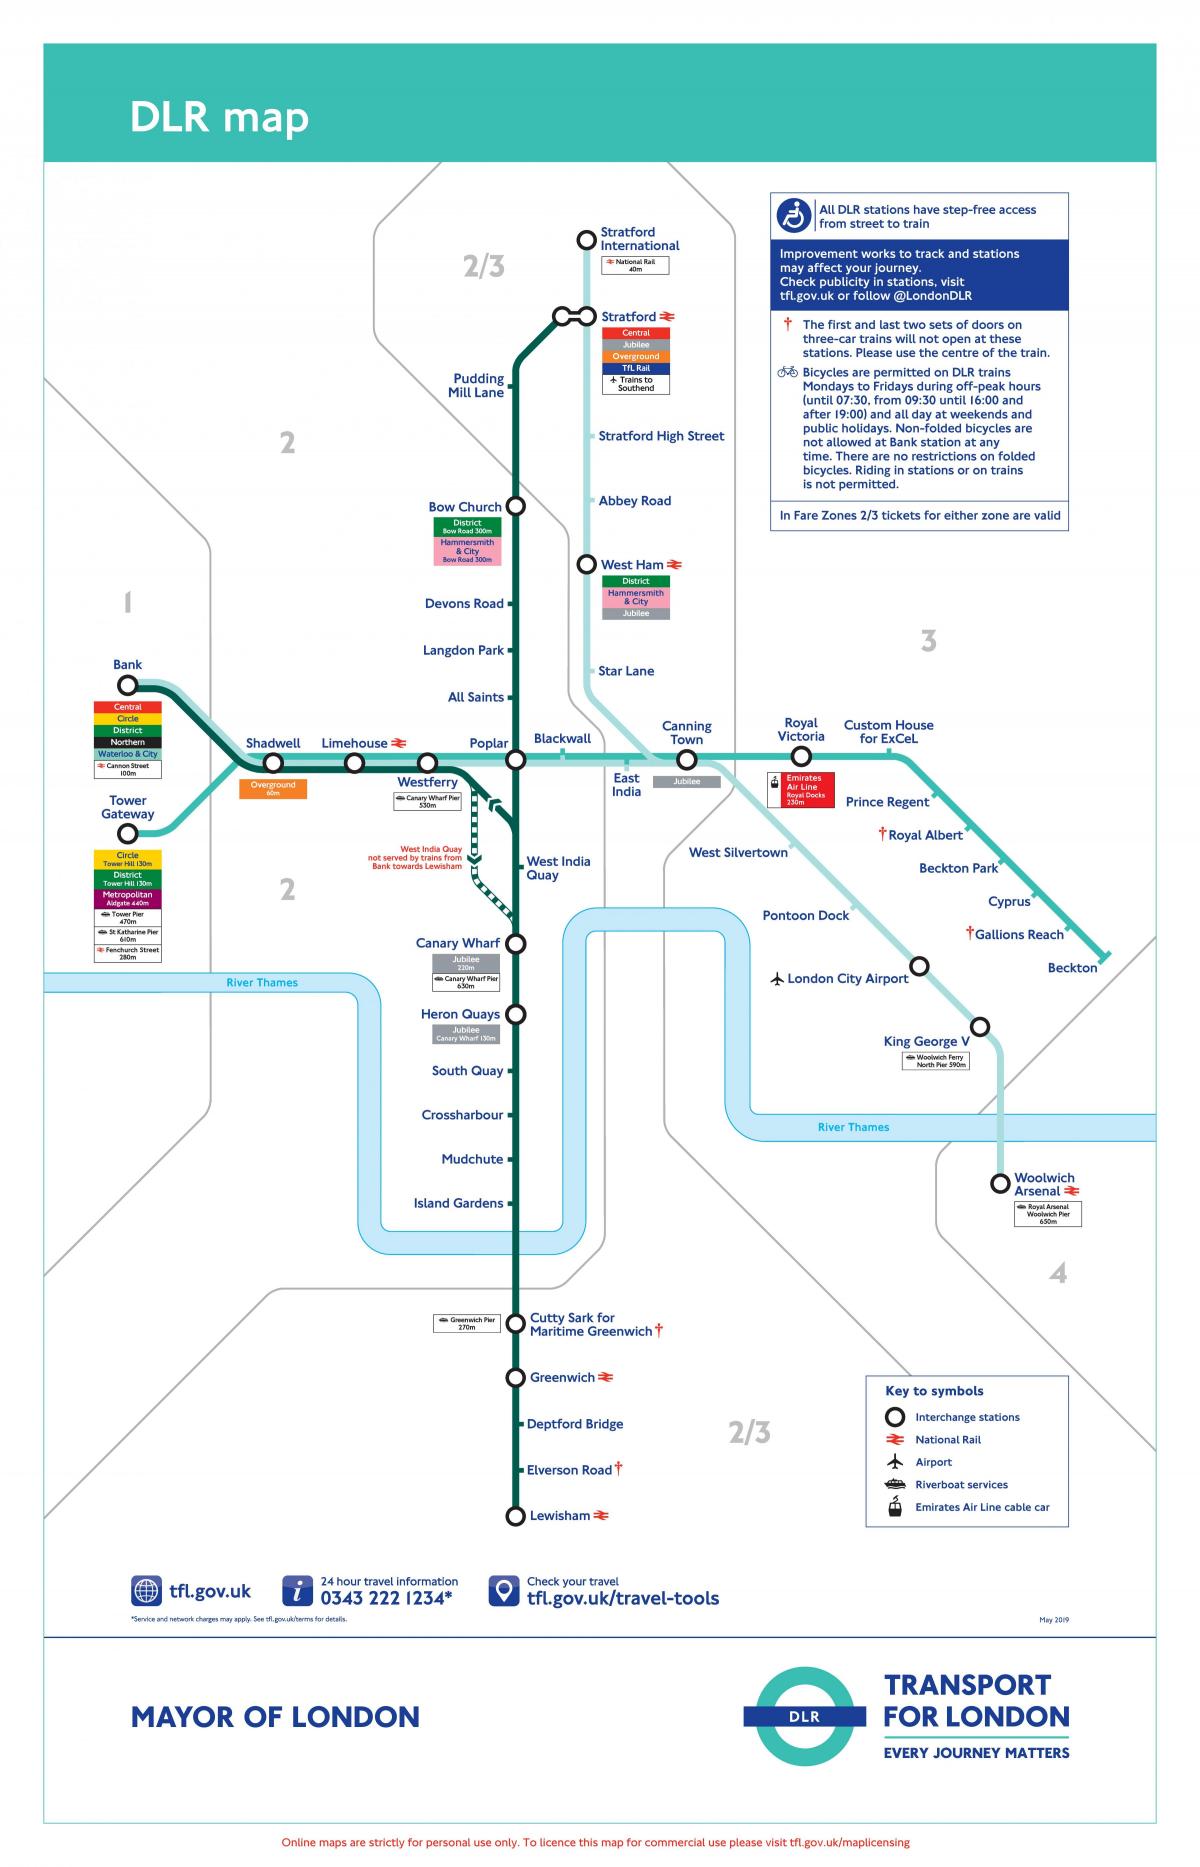 السكك الحديدية الخفيفة دوكلاندز في لندن خريطة